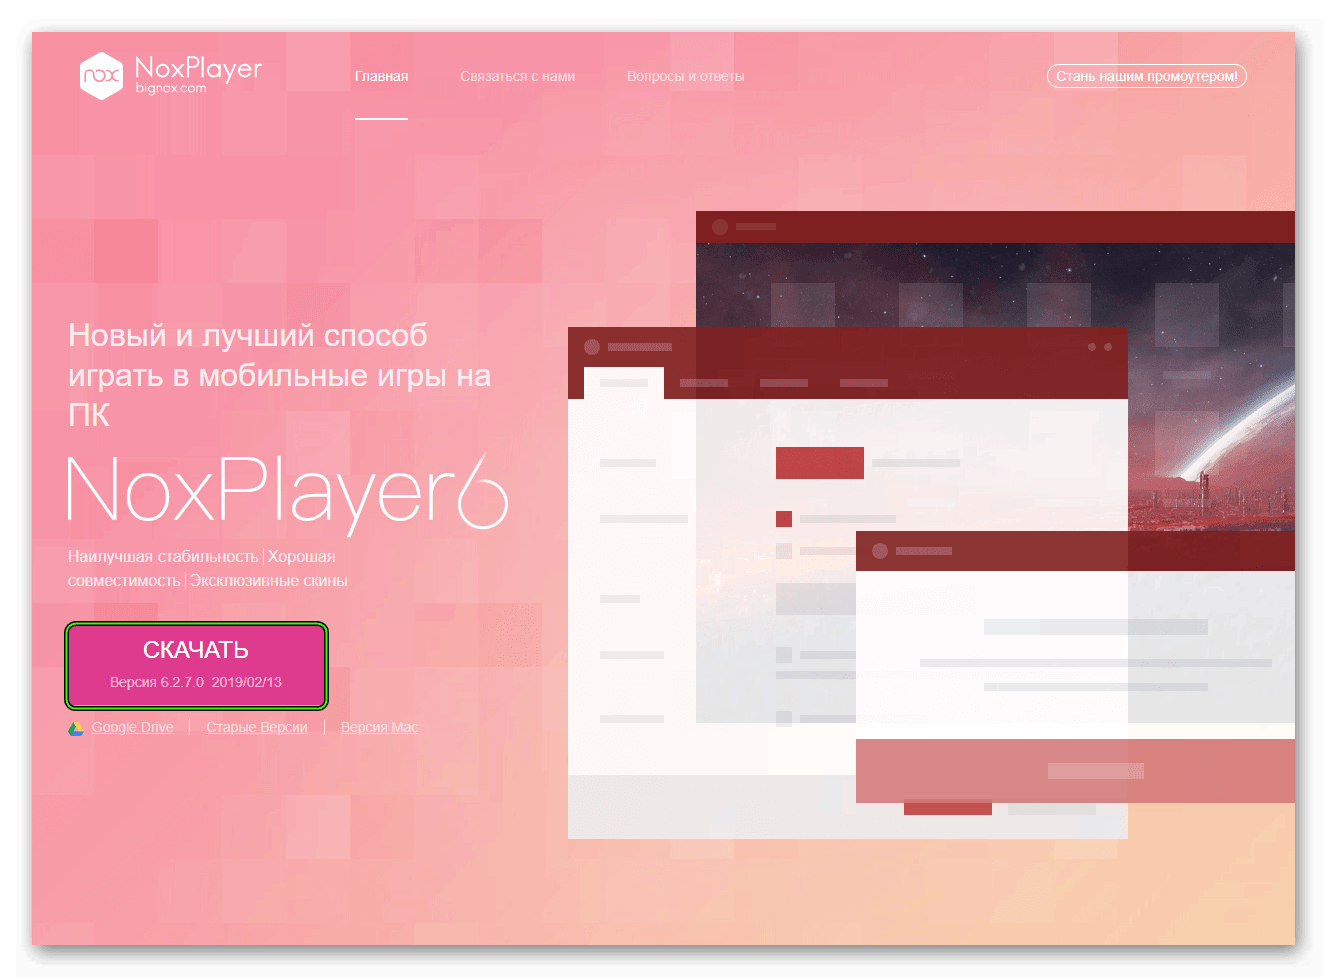 Skachat-Nox-App-Player-s-ofitsialnogo-sajta.png